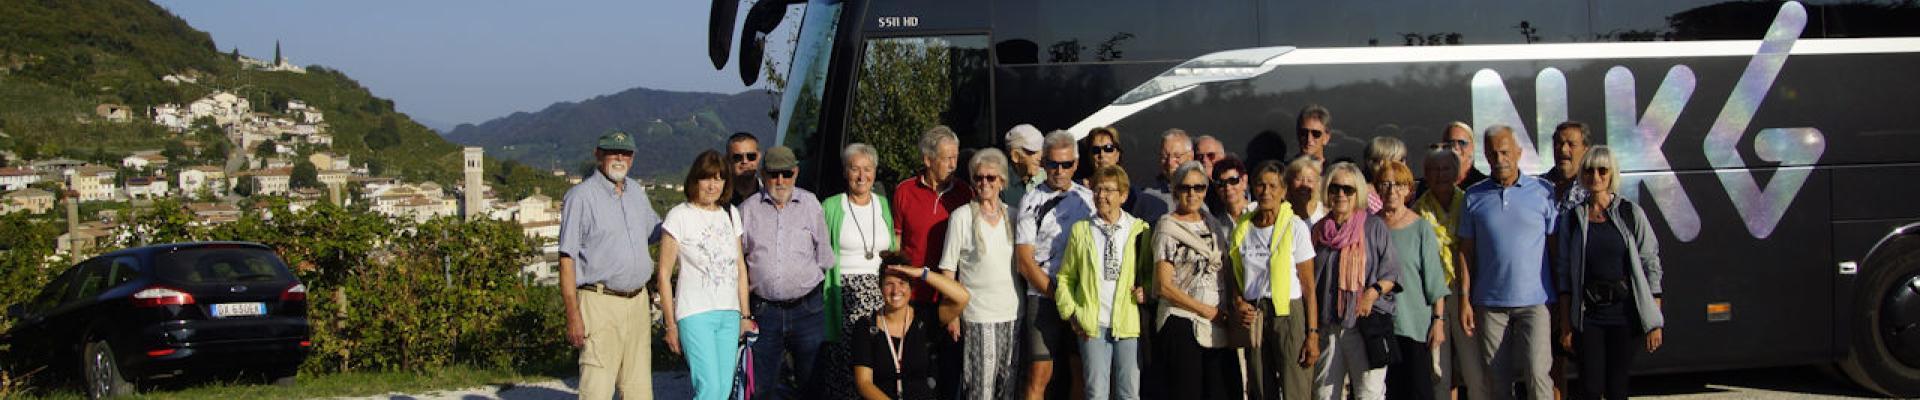 NKG Reisebus unterwegs in Venetien